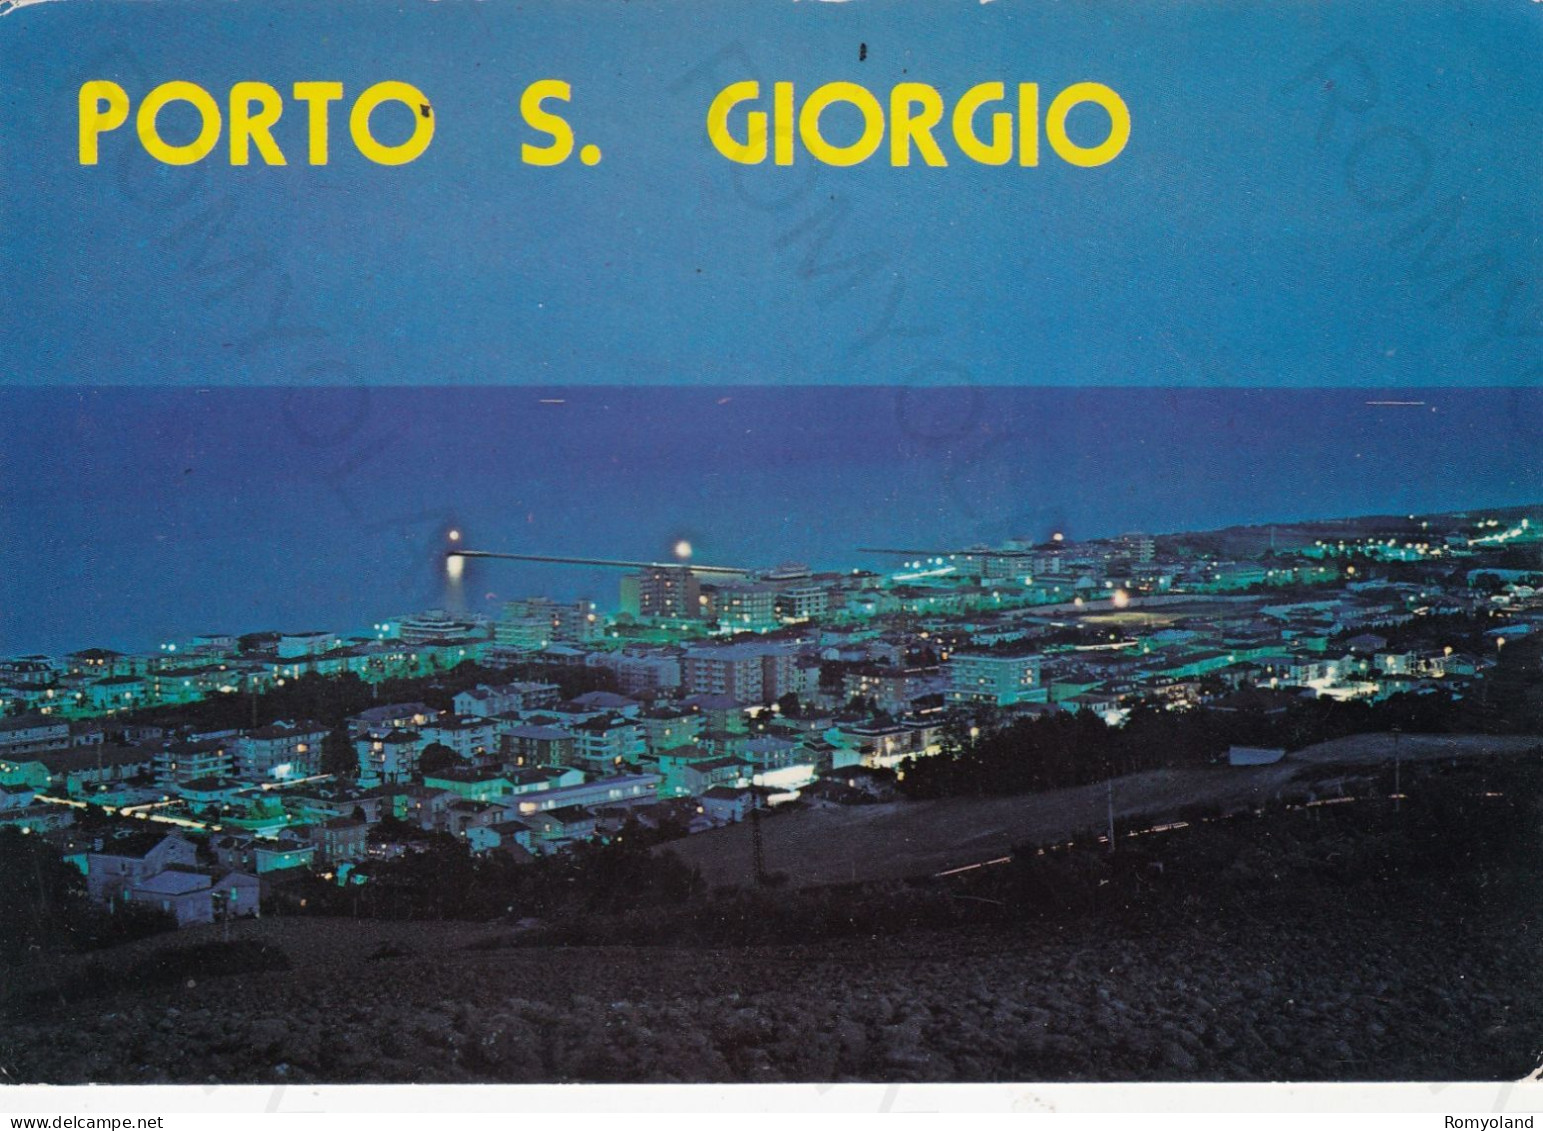 CARTOLINA  PORTO SAN GIORGIO,FERMO,MARCHE-PANORAMA NOTTURNO-STORIA,MEMORIA,CULTURA,RELIGIONE,VIAGGIATA 1988 - Fermo